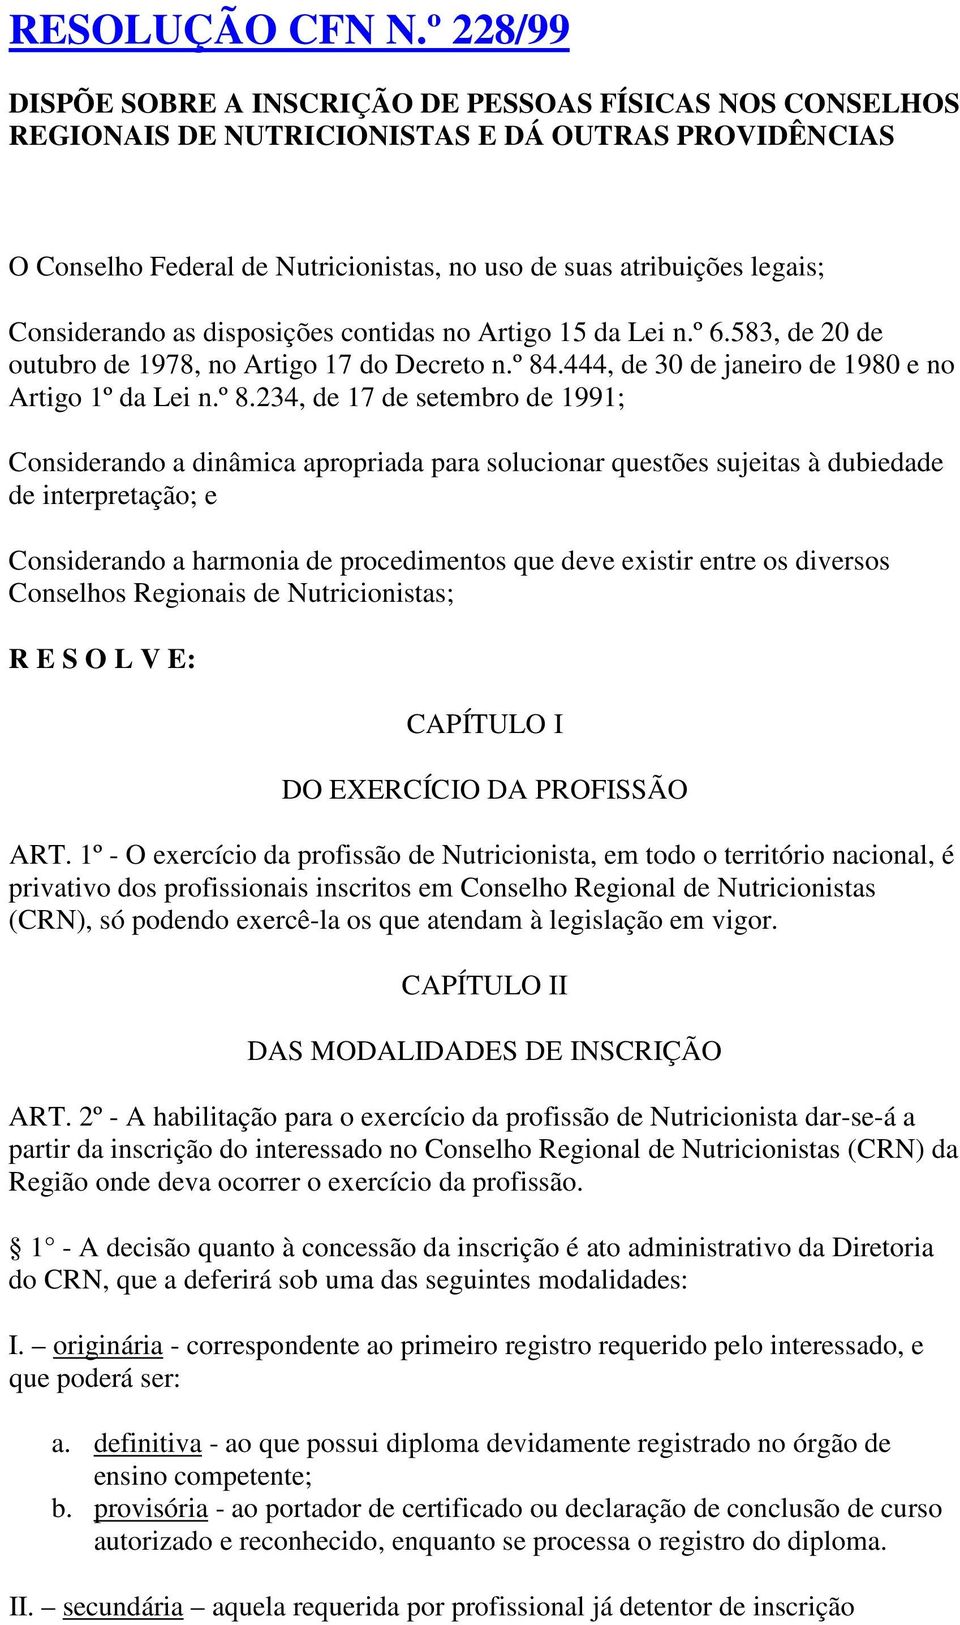 Considerando as disposições contidas no Artigo 15 da Lei n.º 6.583, de 20 de outubro de 1978, no Artigo 17 do Decreto n.º 84